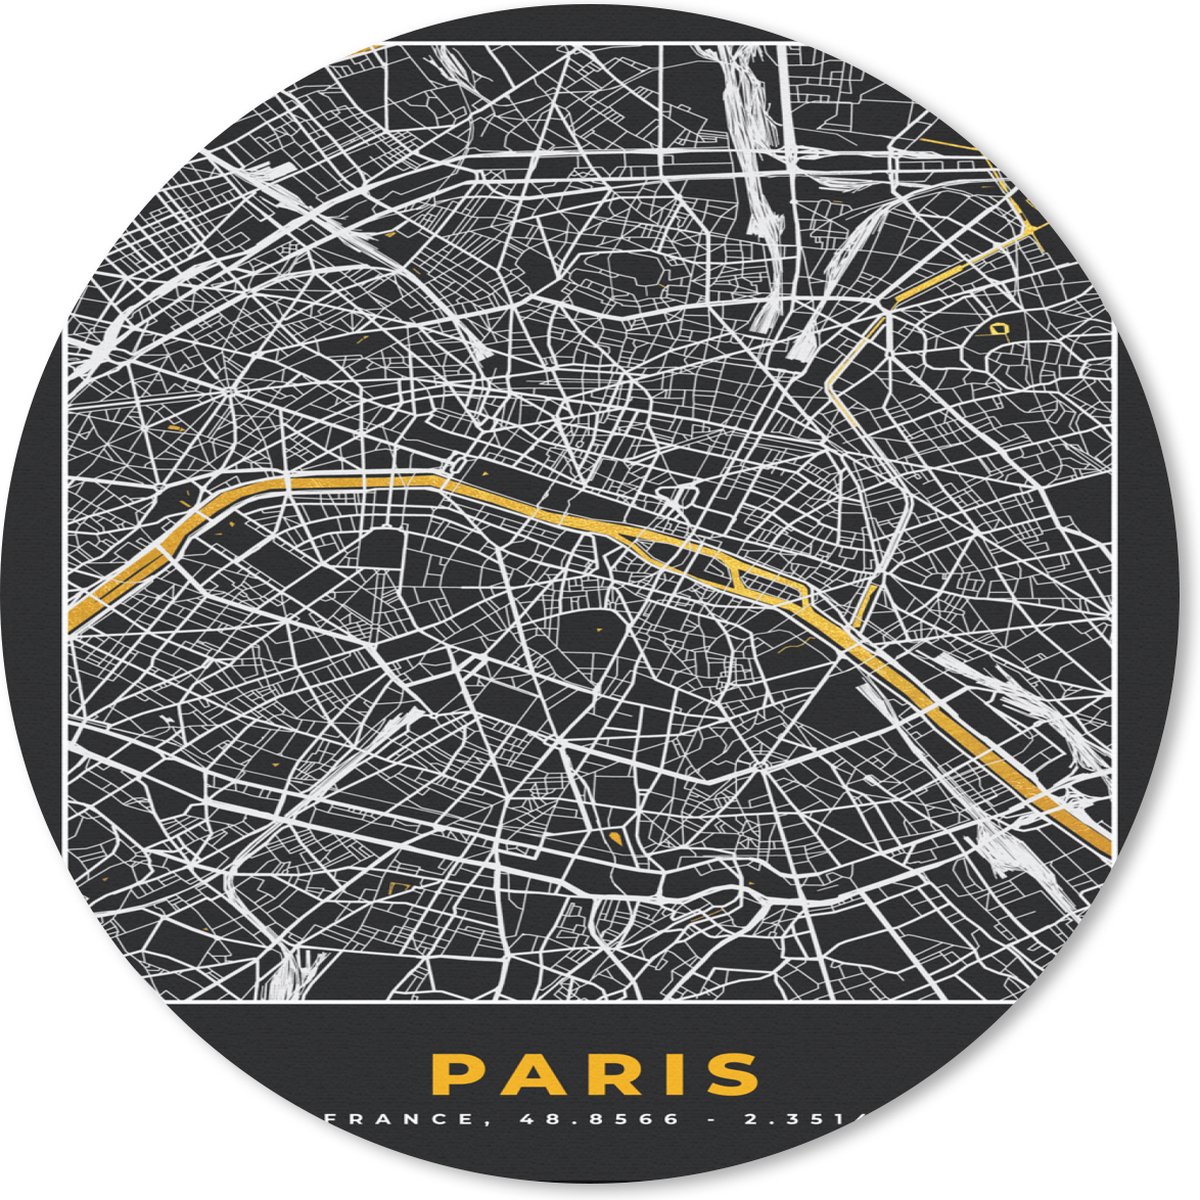 Muismat - Mousepad - Rond - Paris - Stadskaart – Plattegrond – Kaart – Frankrijk - 50x50 cm - Ronde muismat